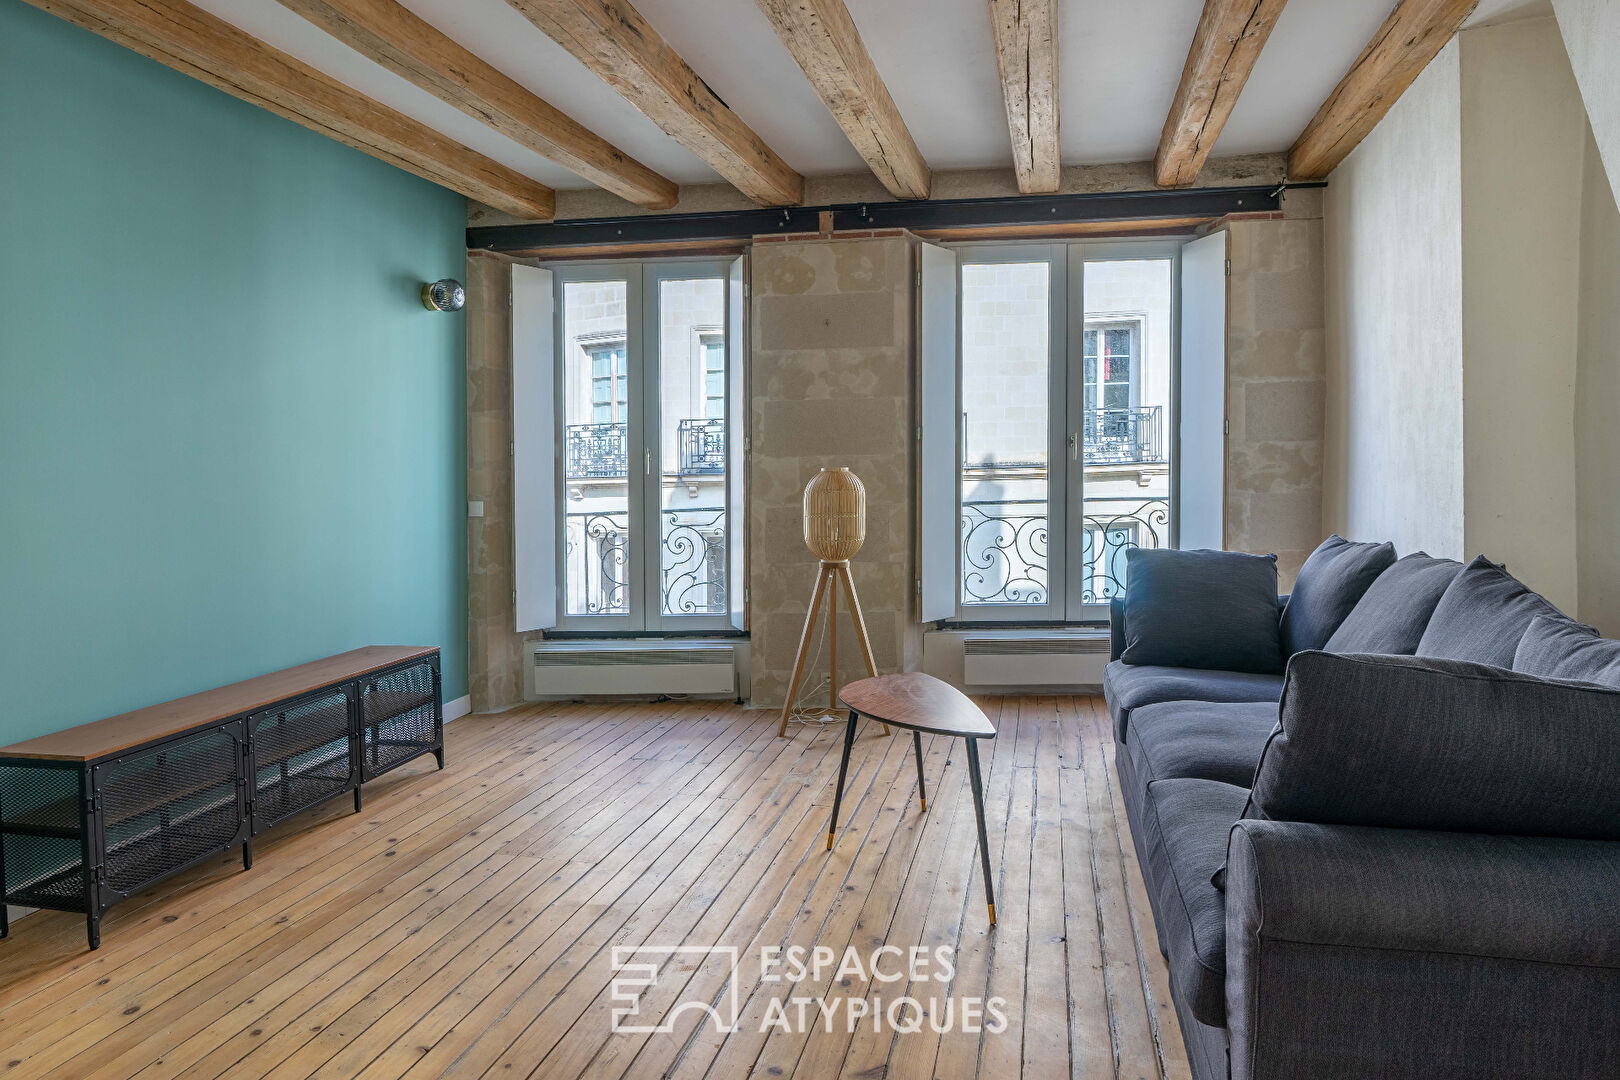 Appartement meublé de 61 m² au centre ville de Nantes